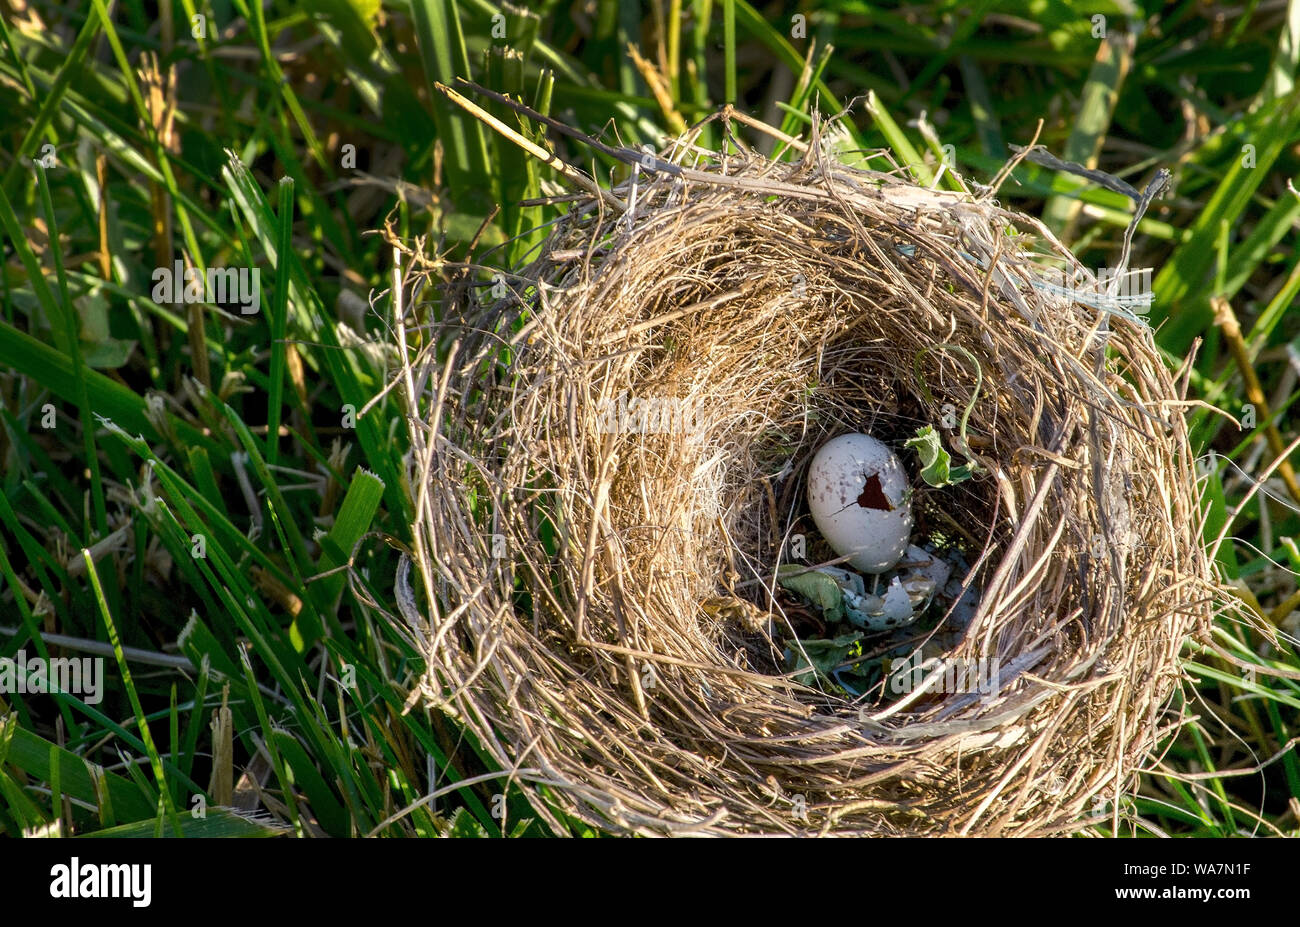 Abbandonato nido di uccelli si trova in erba con gusci vuoti all'interno Foto Stock